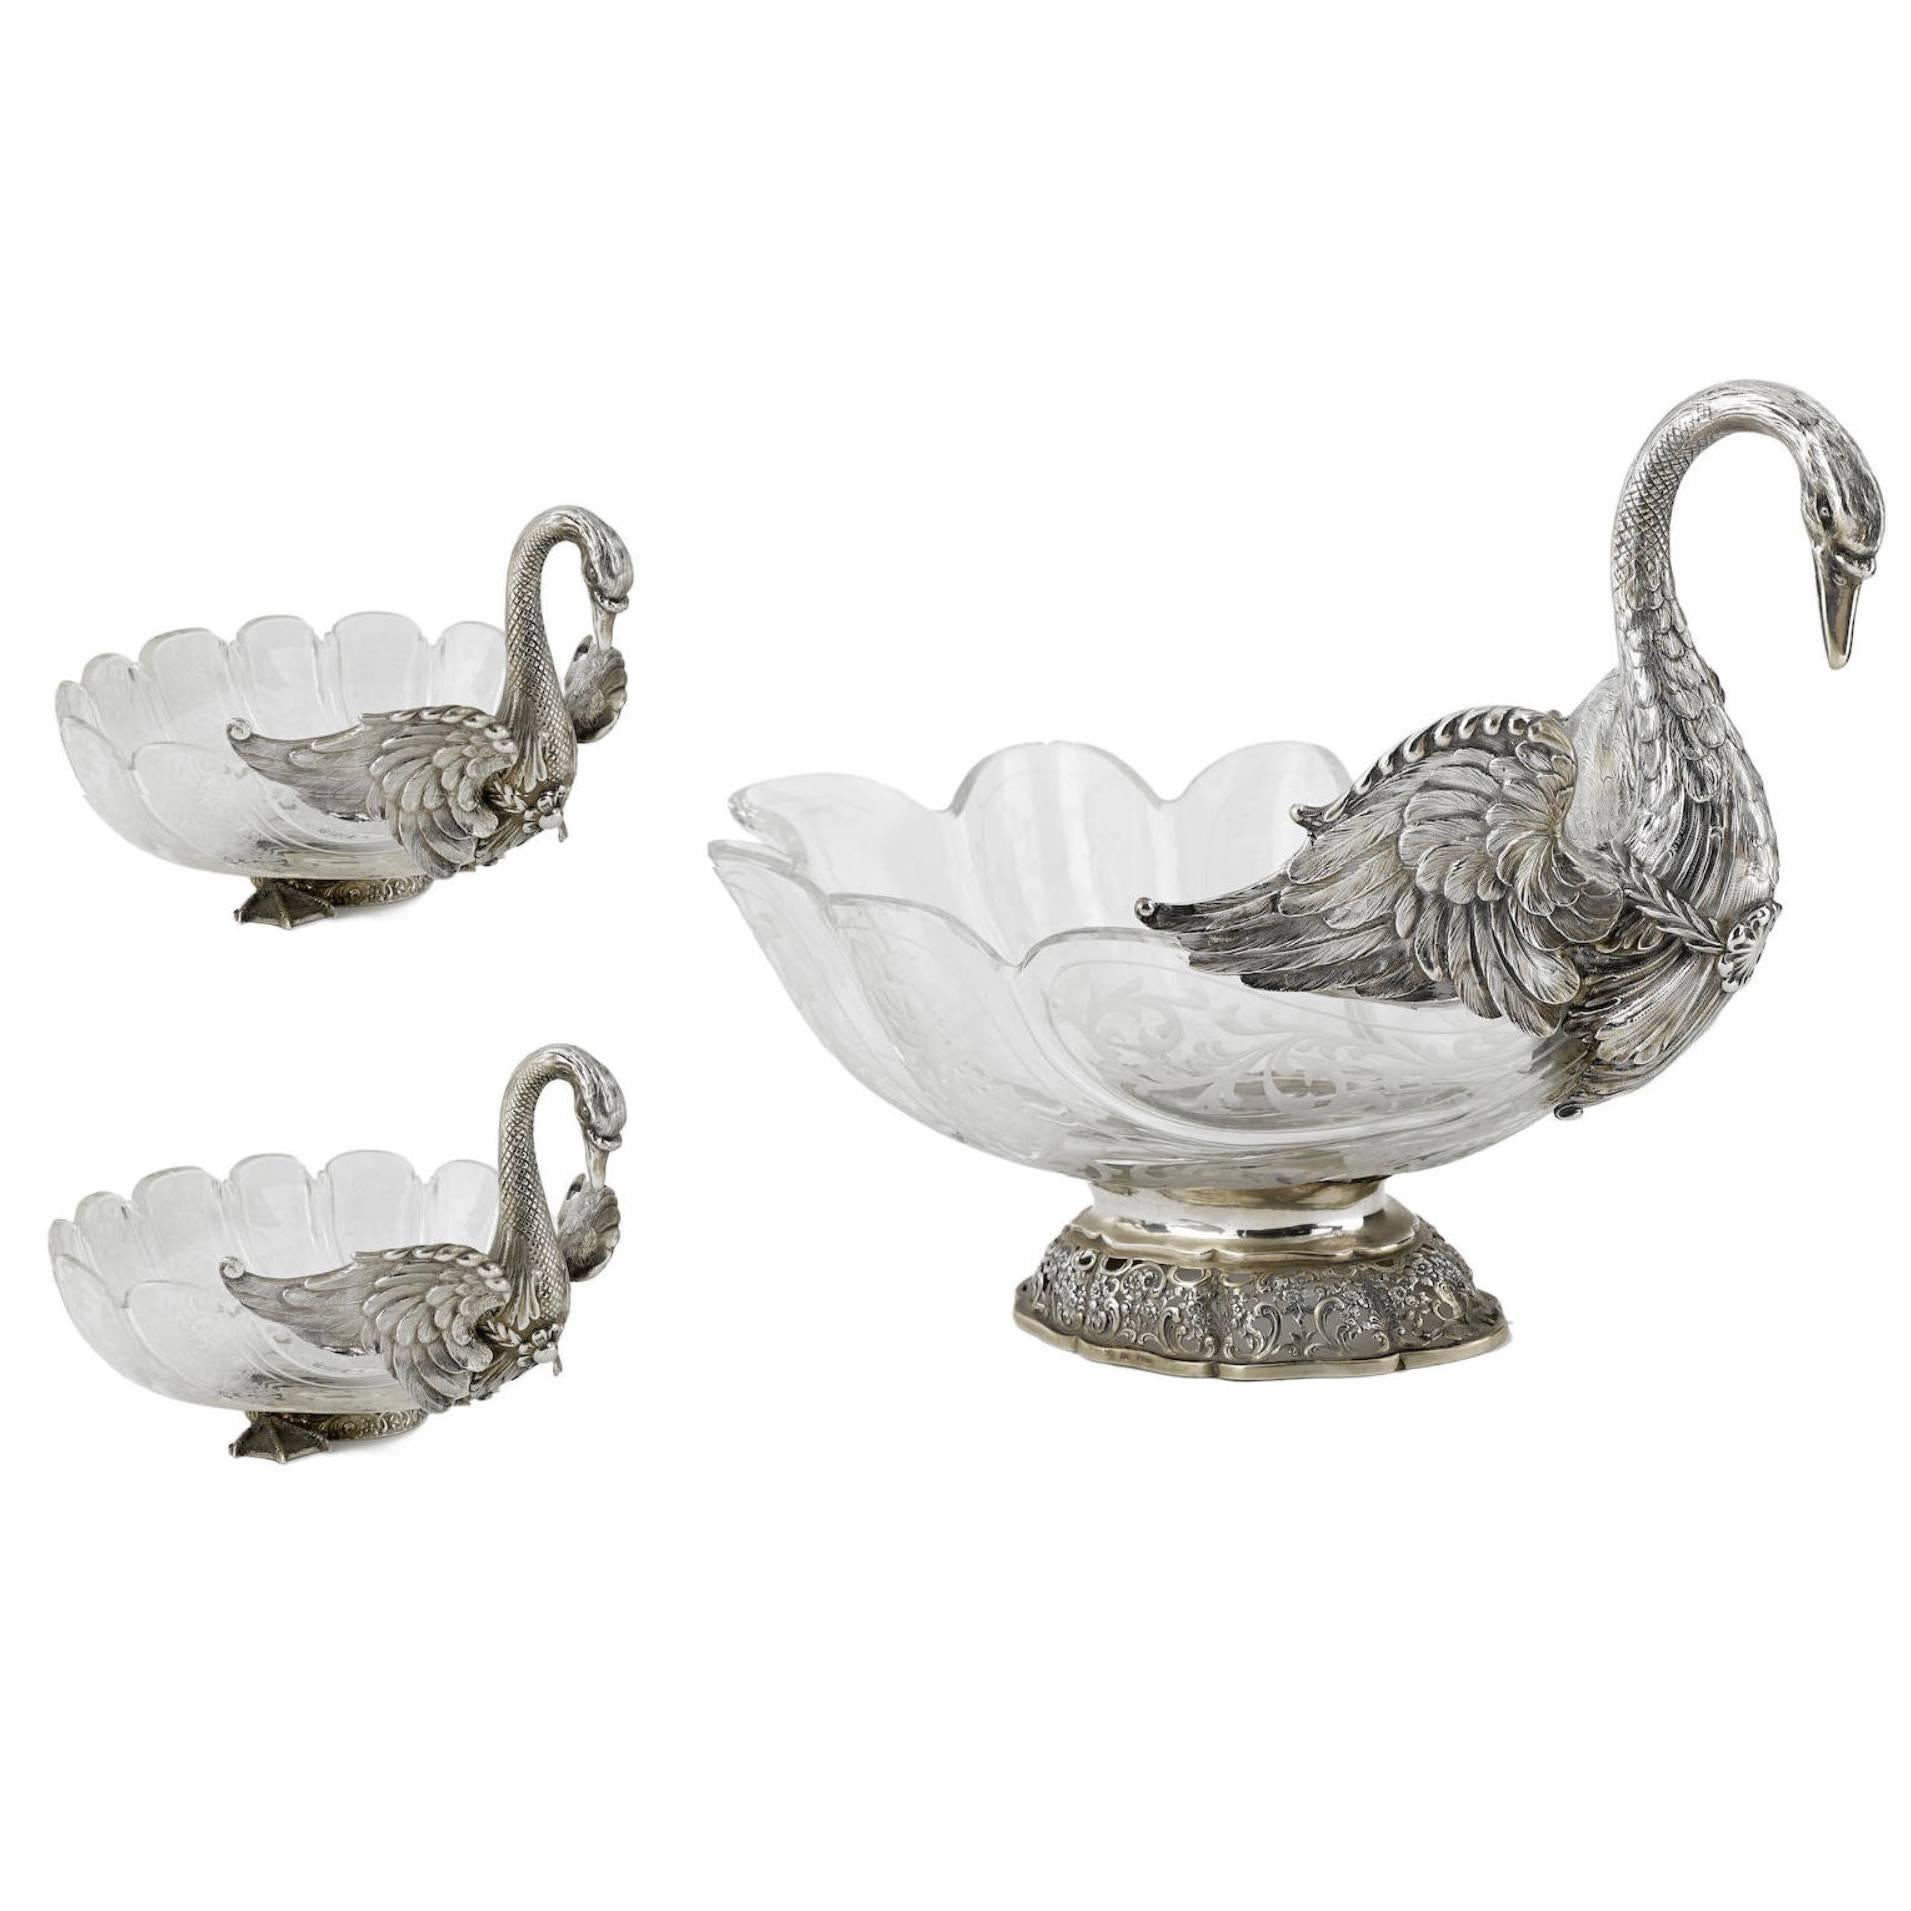 German Three-Piece Silver Swan Centerpiece Set by J.D. Schleissner & Sohne